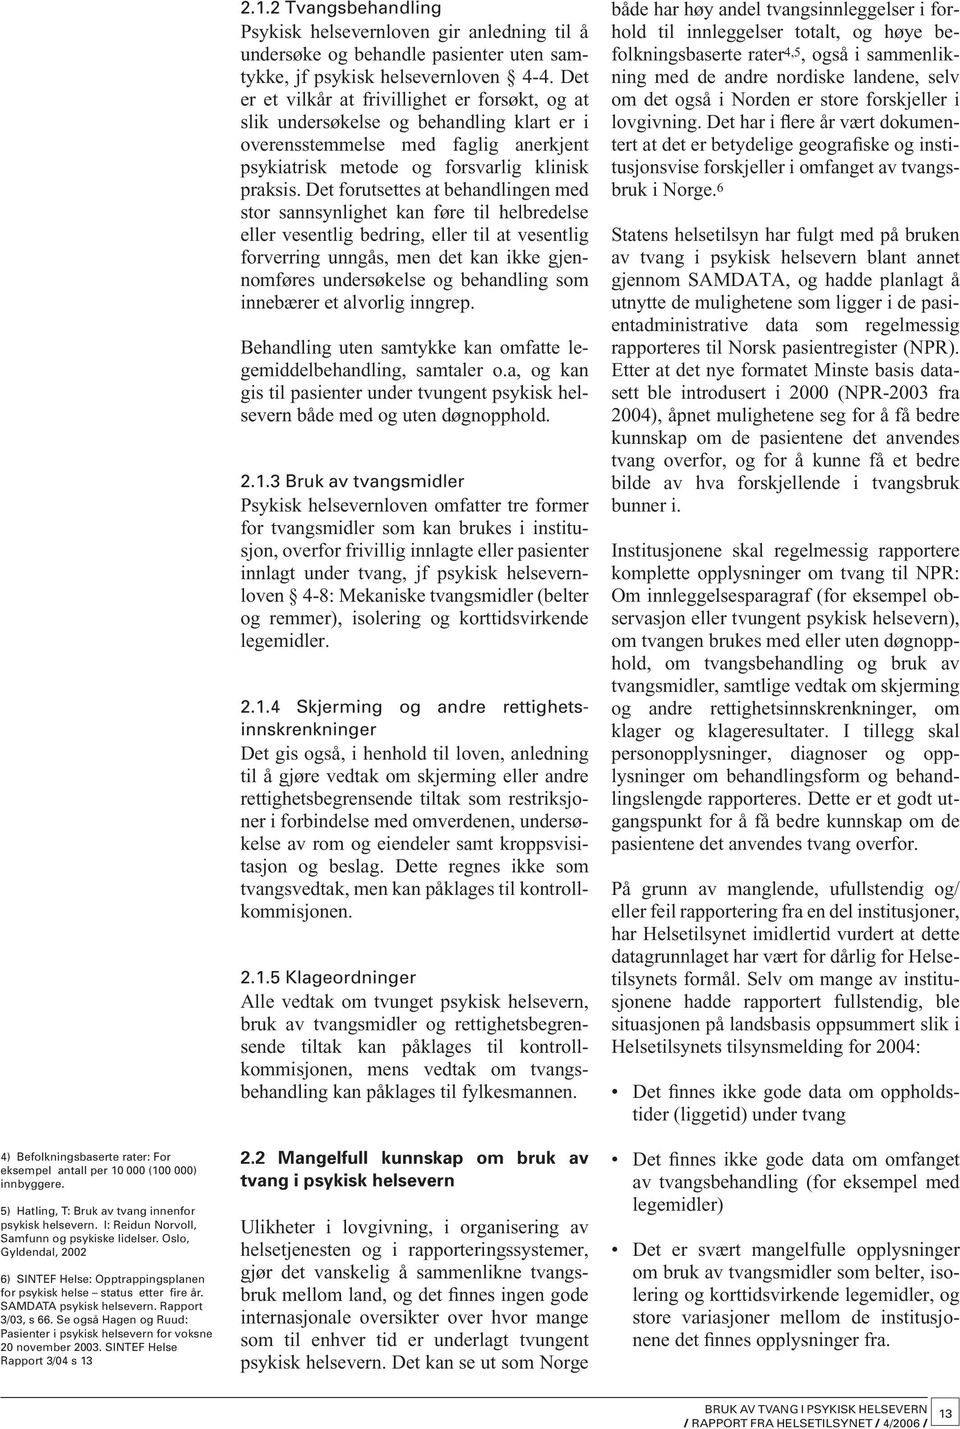 Se også Hagen og Ruud: Pasienter i psykisk helsevern for voksne 20 november 2003. SINTEF Helse Rapport 3/04 s 13